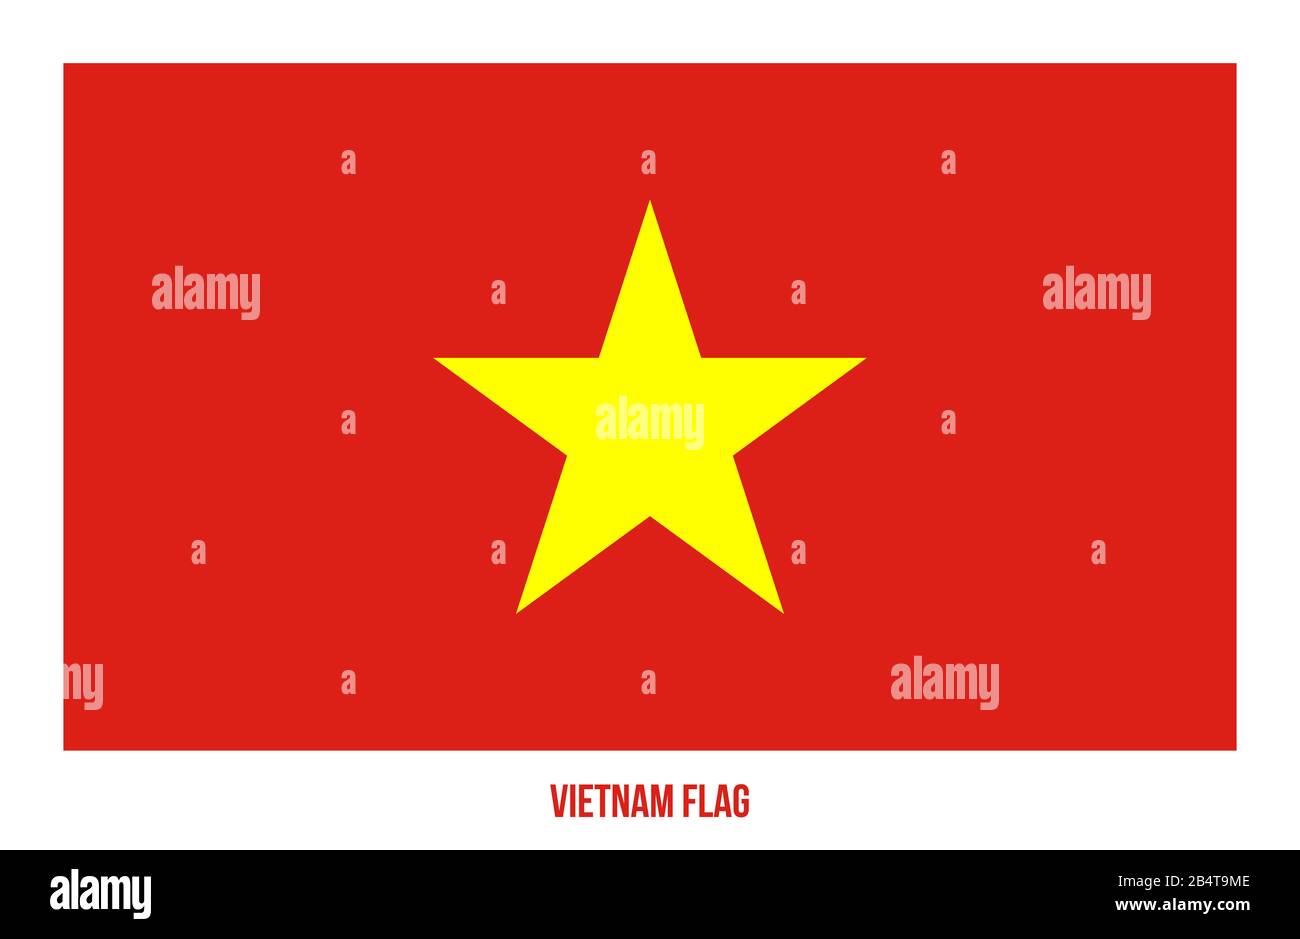 Vietnam Flag Vector Illustration on White Background. Vietnam National Flag. Stock Photo